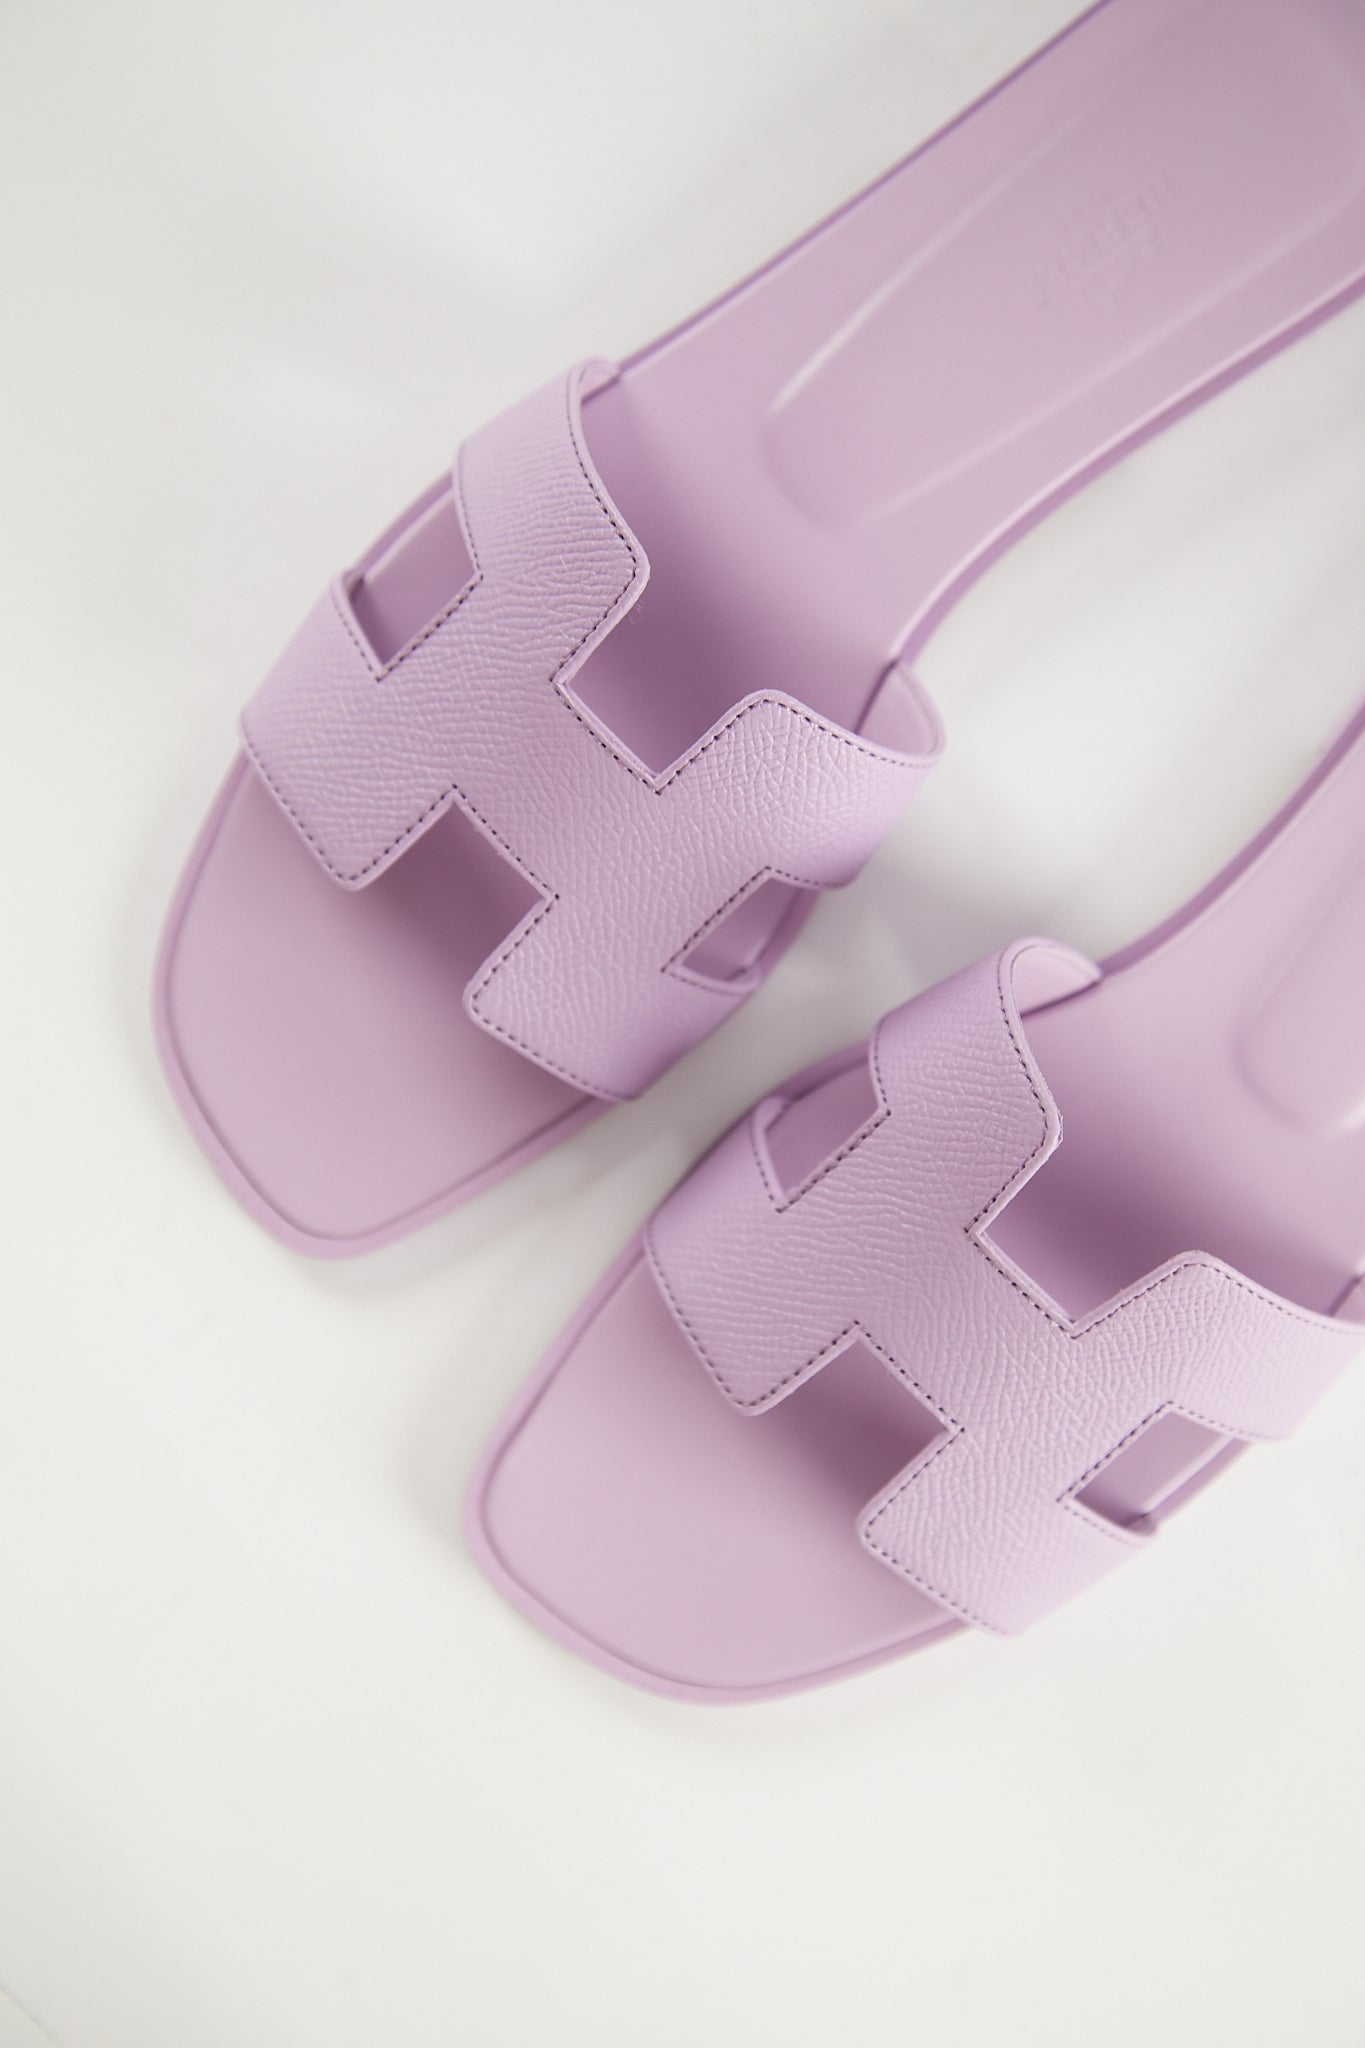 Hermès Oran Sandals (Violet Améthyste)